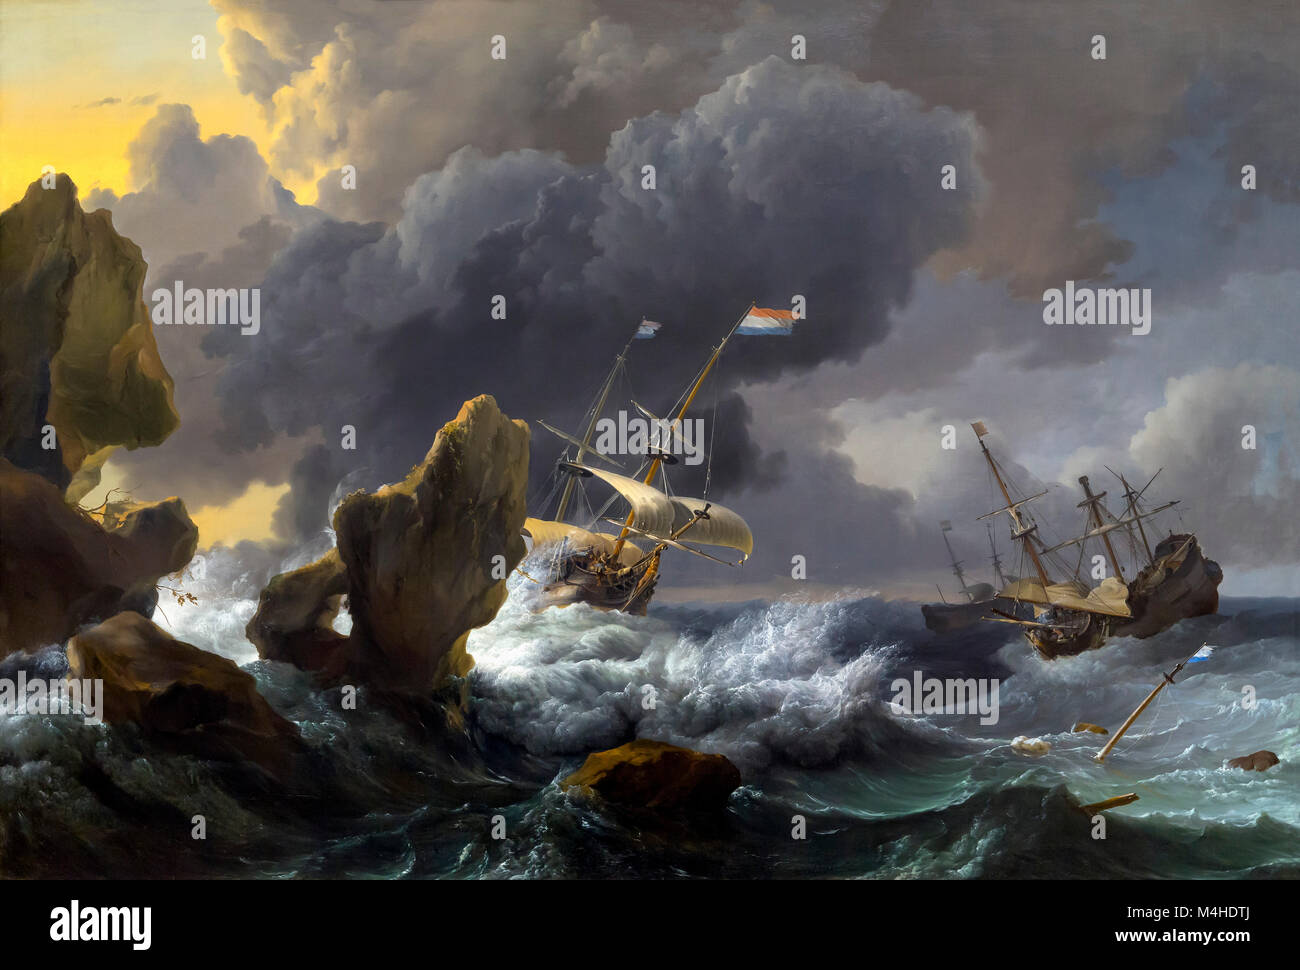 Les navires en détresse au large d'une côte rocheuse, Ludolf Bakhuizen, 1667, National Gallery of Art, Washington DC, USA, Amérique du Nord Banque D'Images